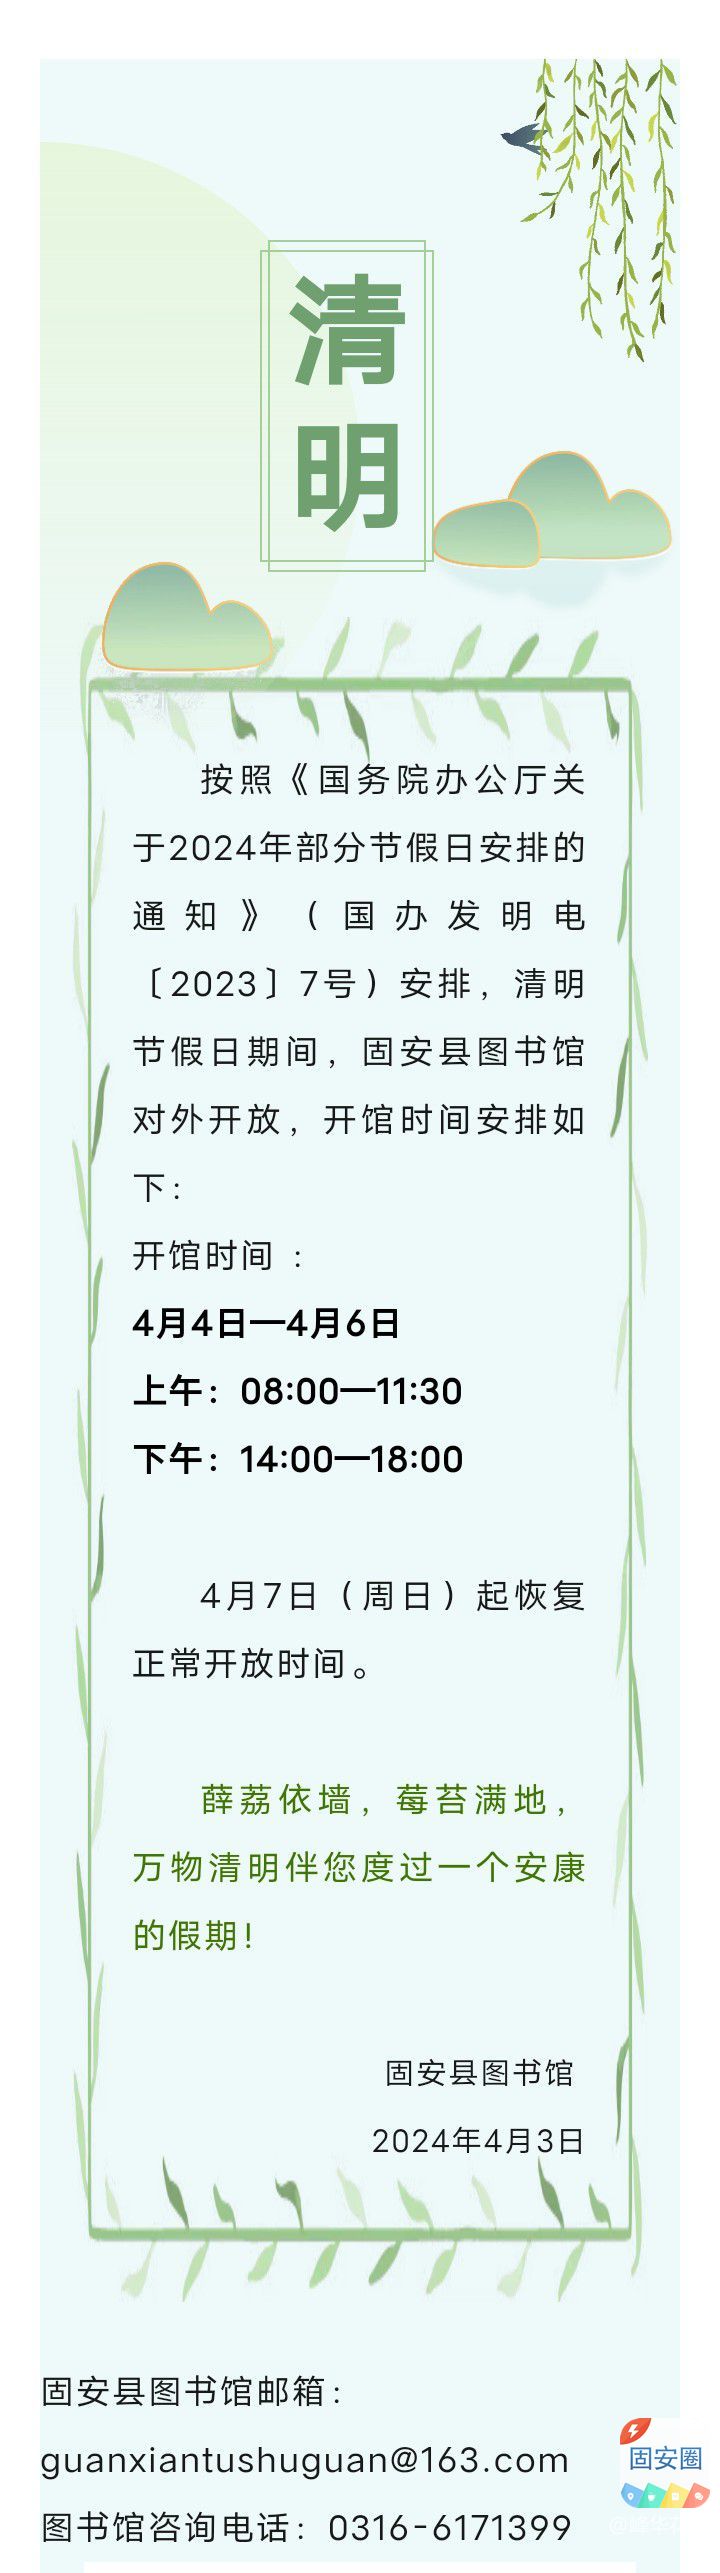 固安县图书馆2024年清明节开放安排2904 作者:峰华花园 帖子ID:297900 